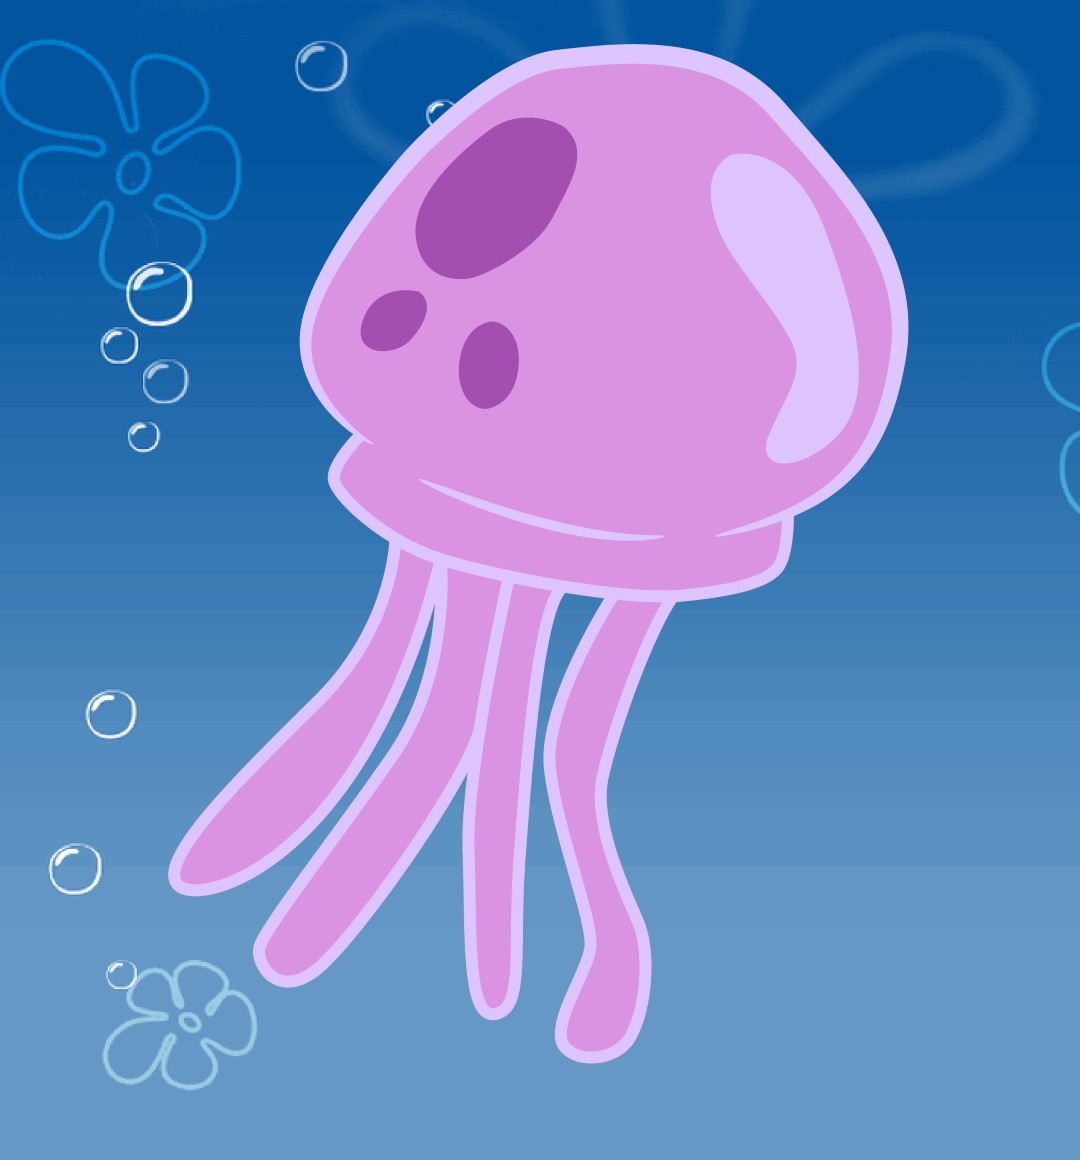 How To Draw A Spongebob Jellyfish Draw Central